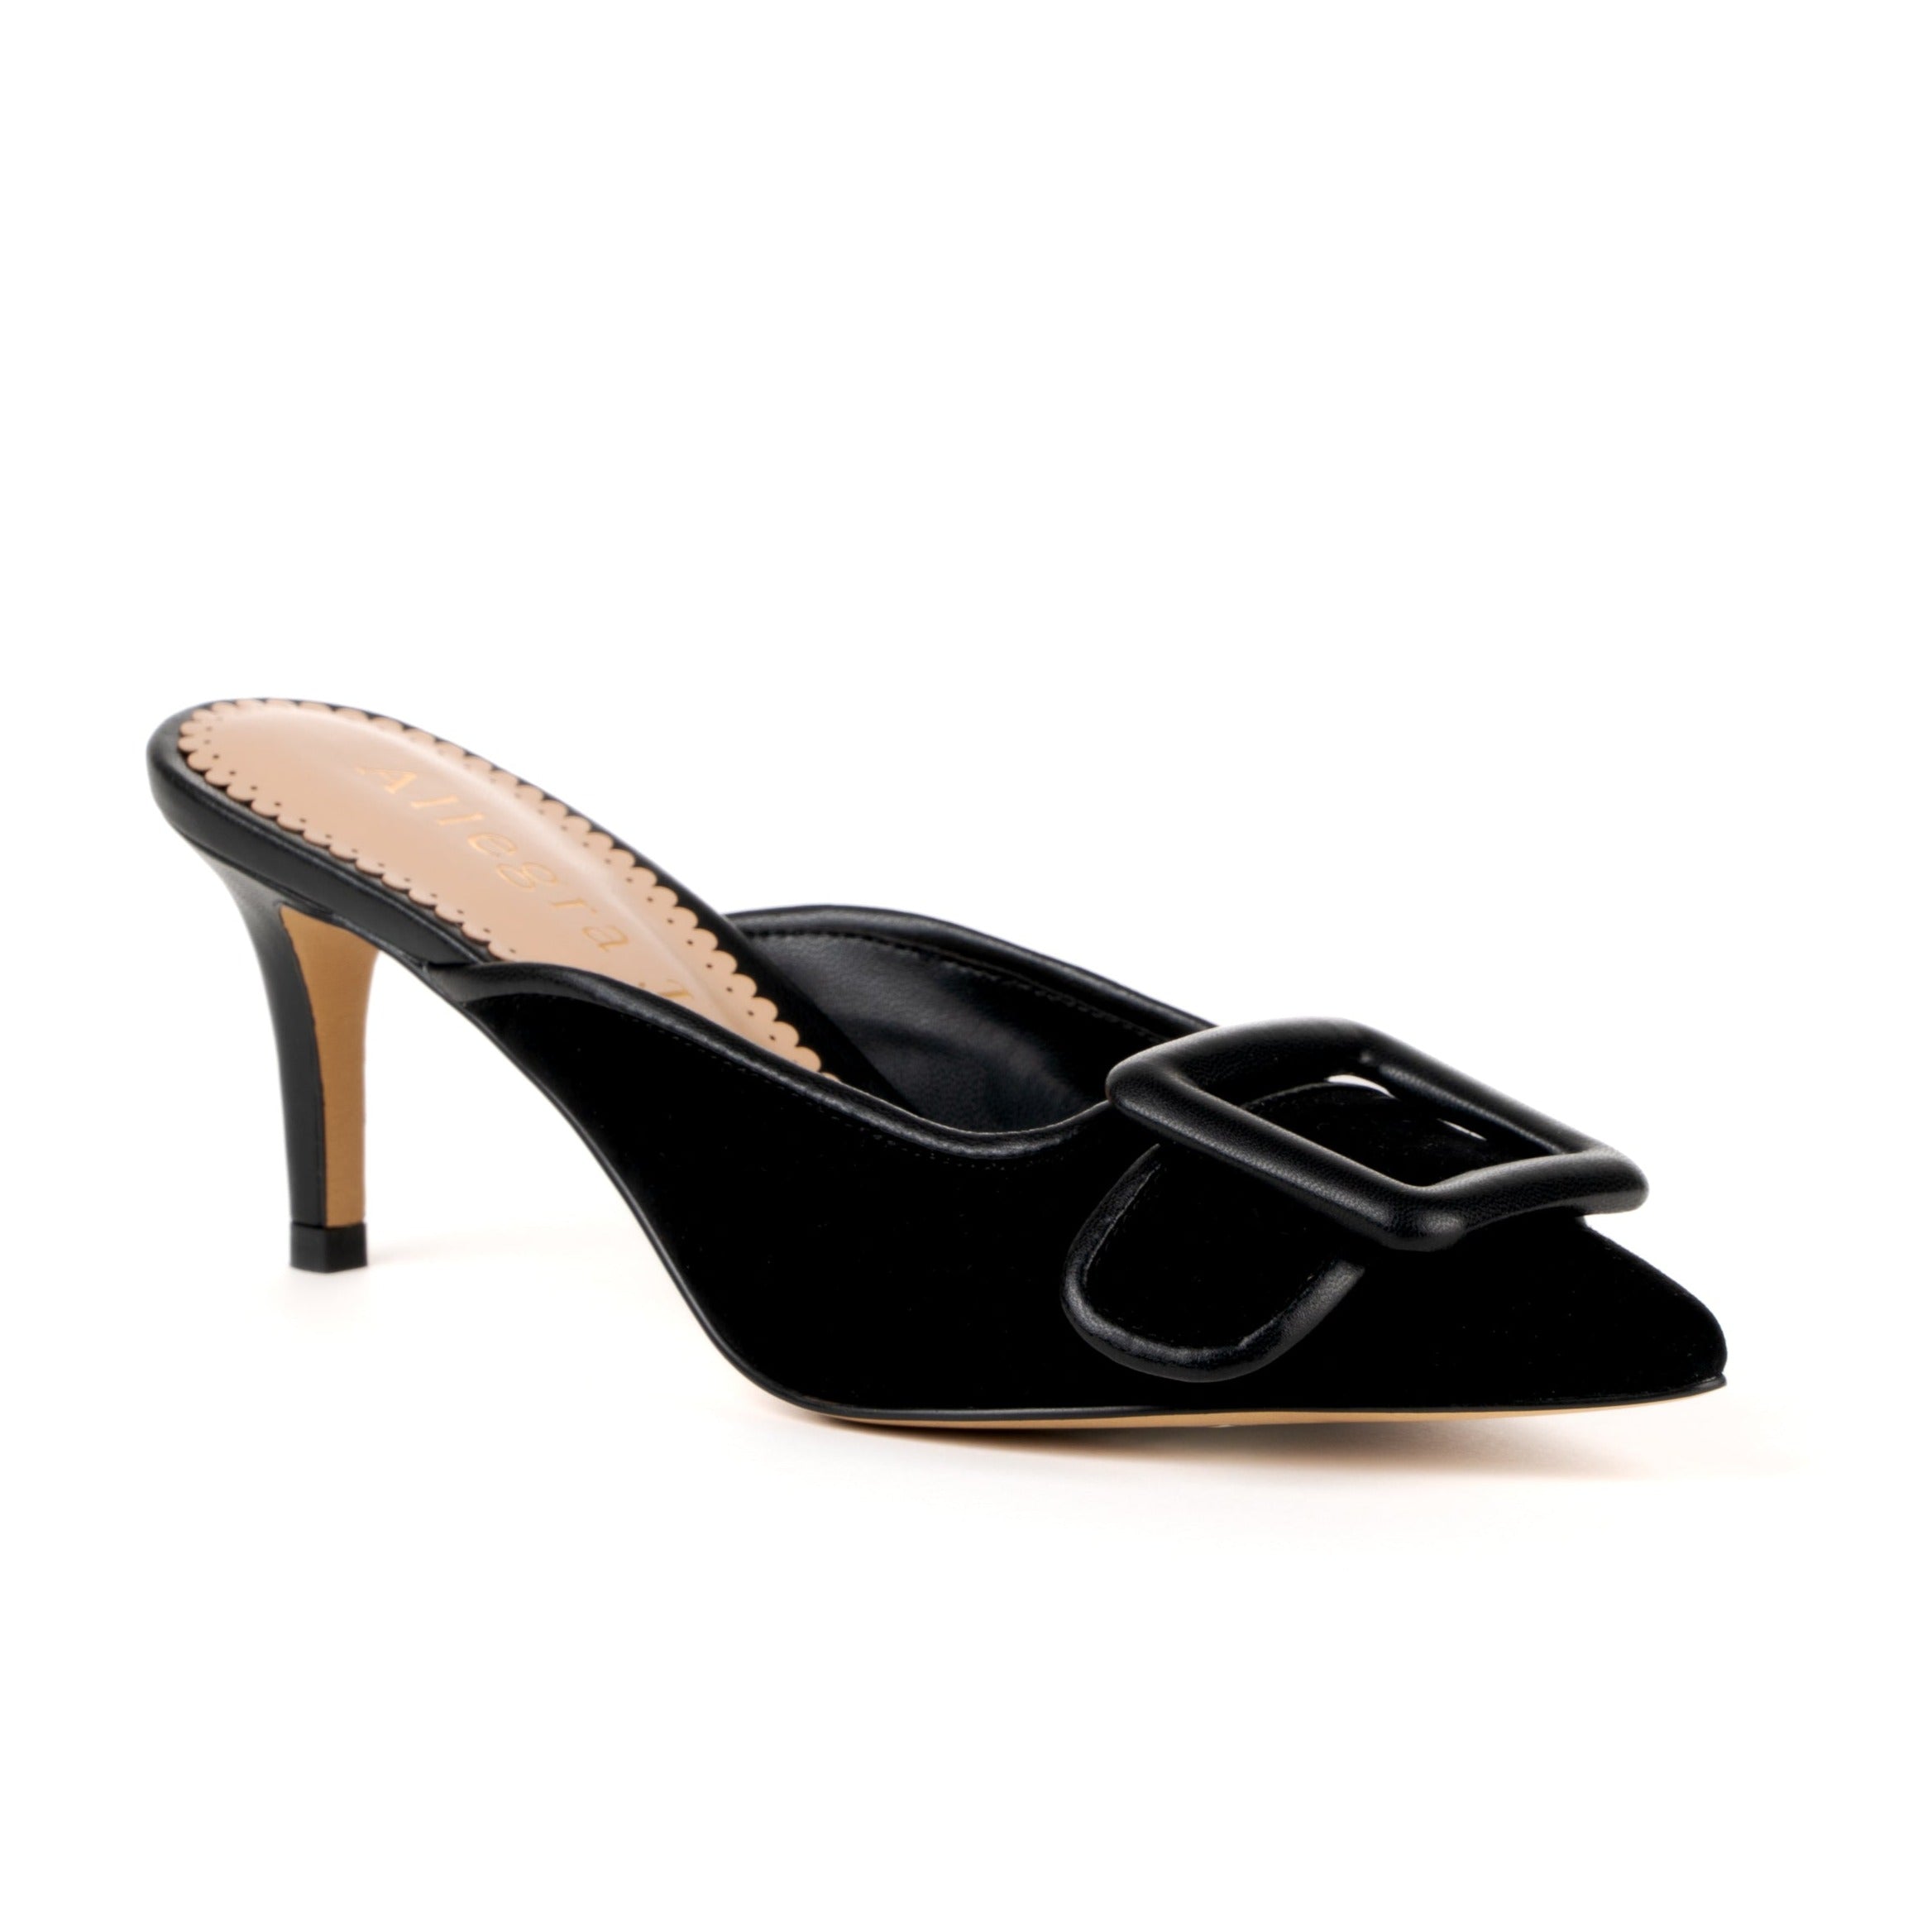 Black mule sandal heels with buckle design upper -  corner view 